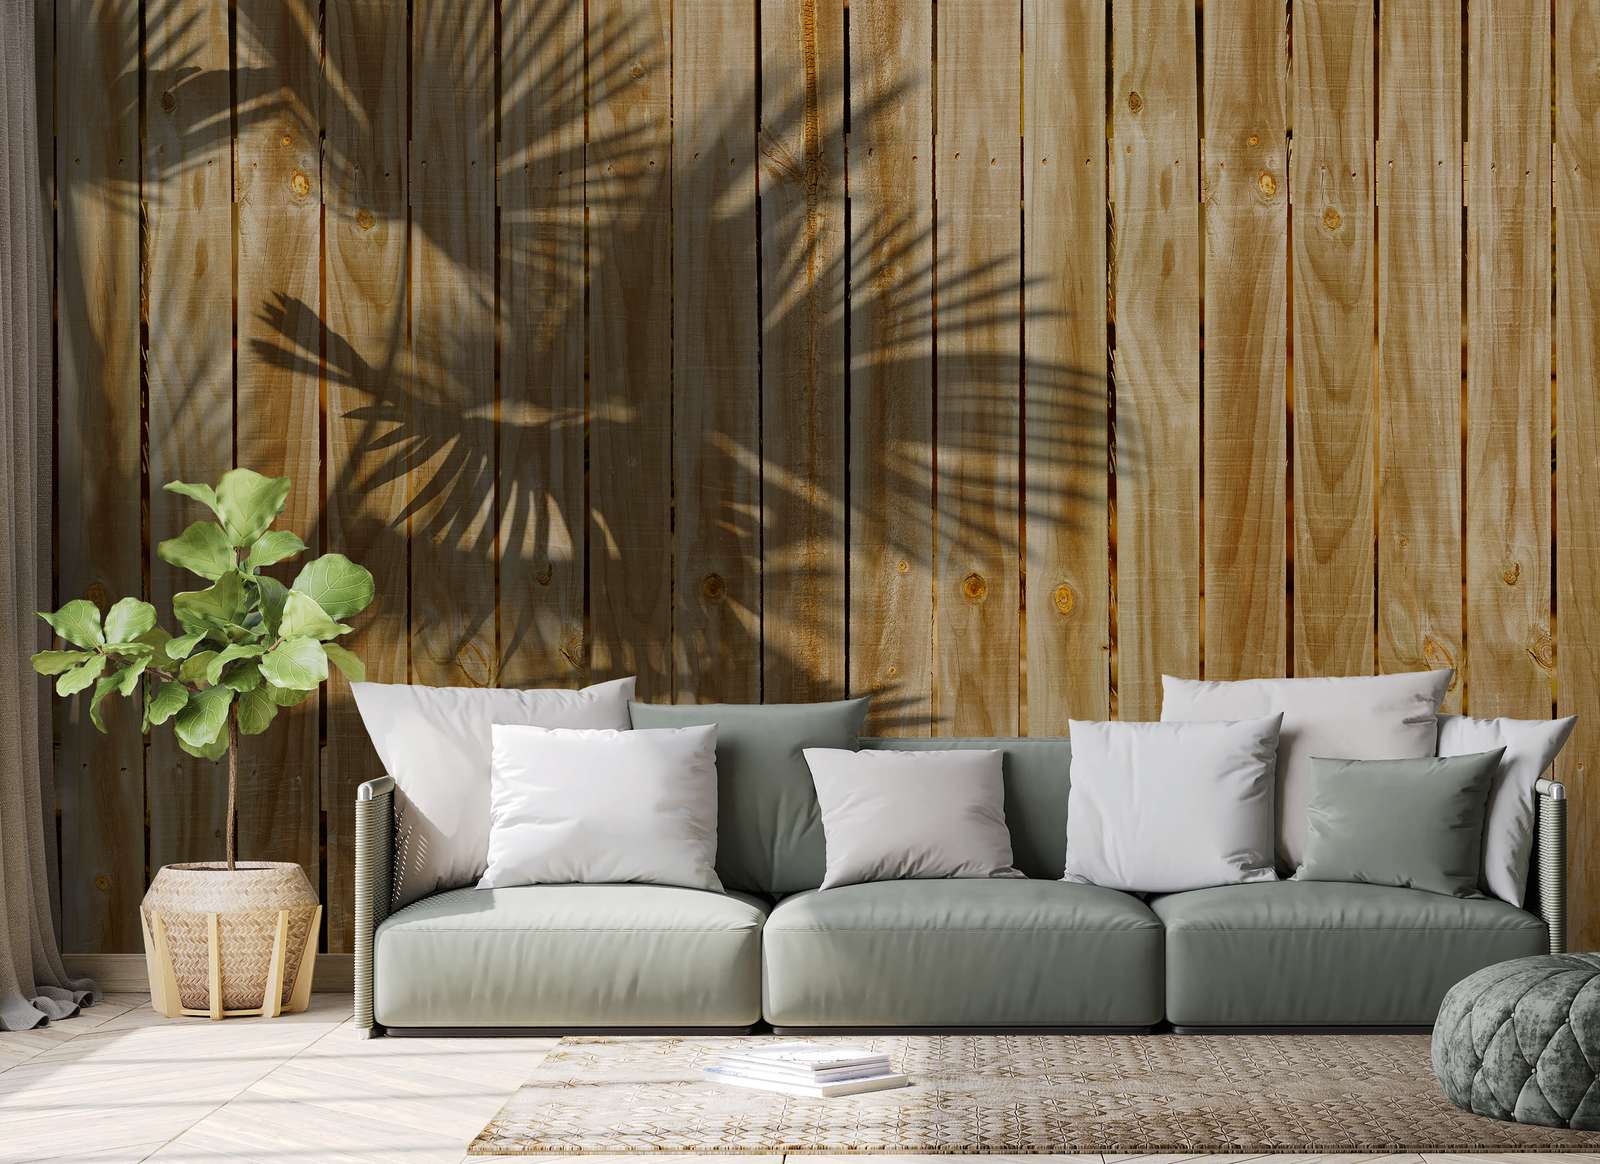             Houtlook muurschildering met schaduw van palmbladeren - Beige
        